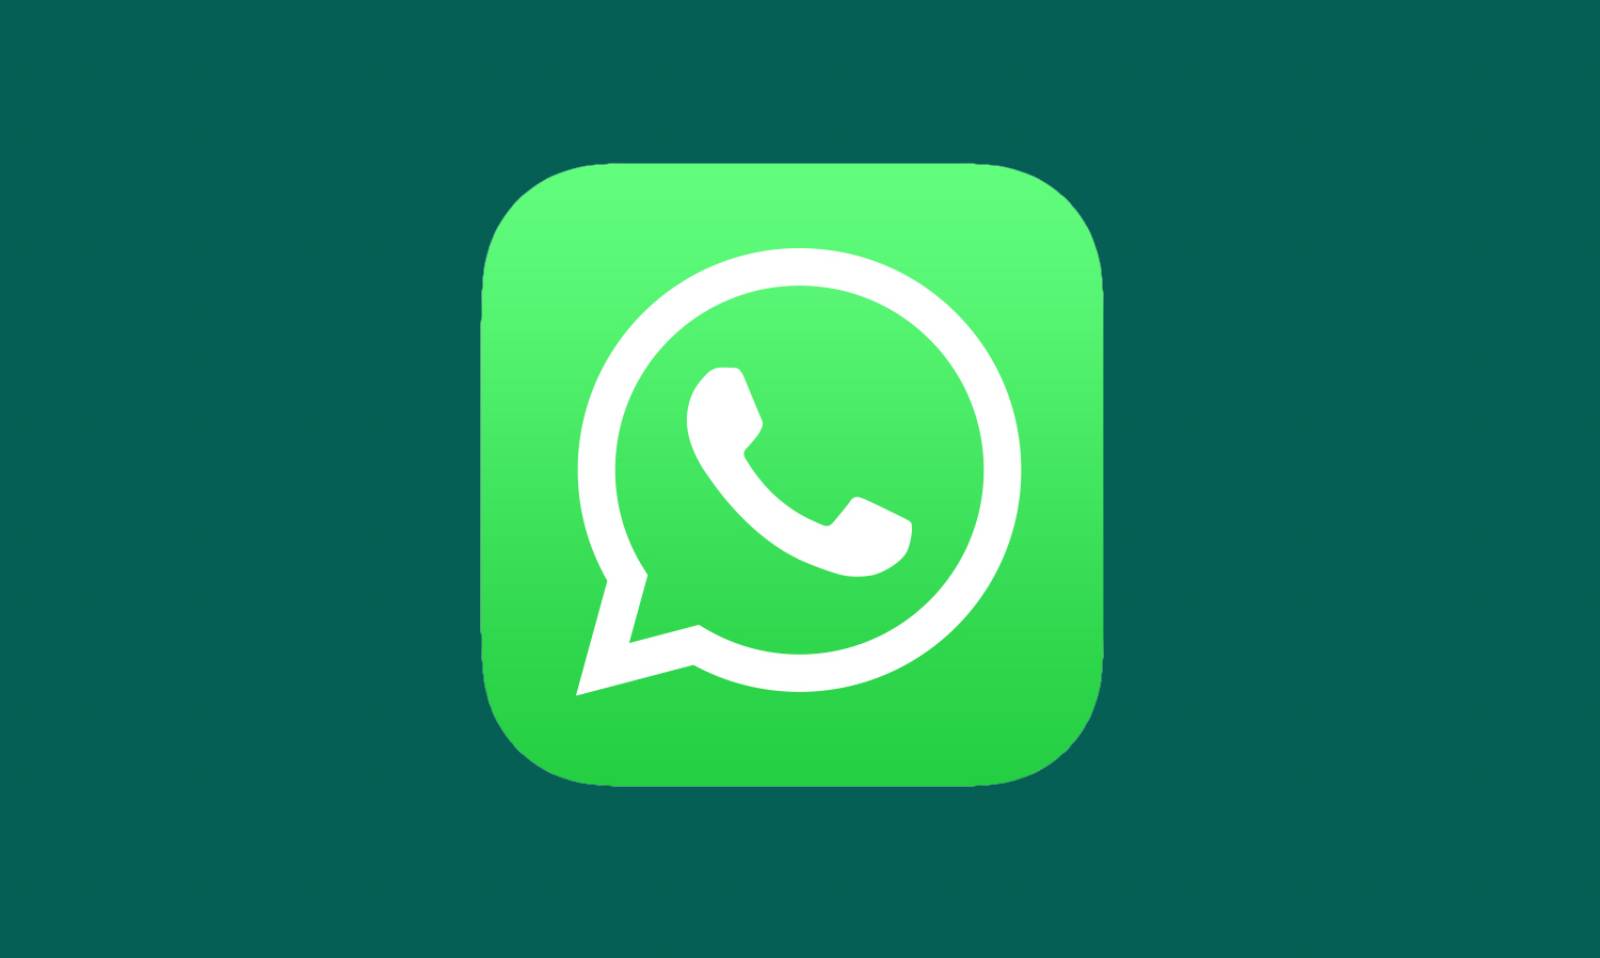 WhatsApp consum baterie